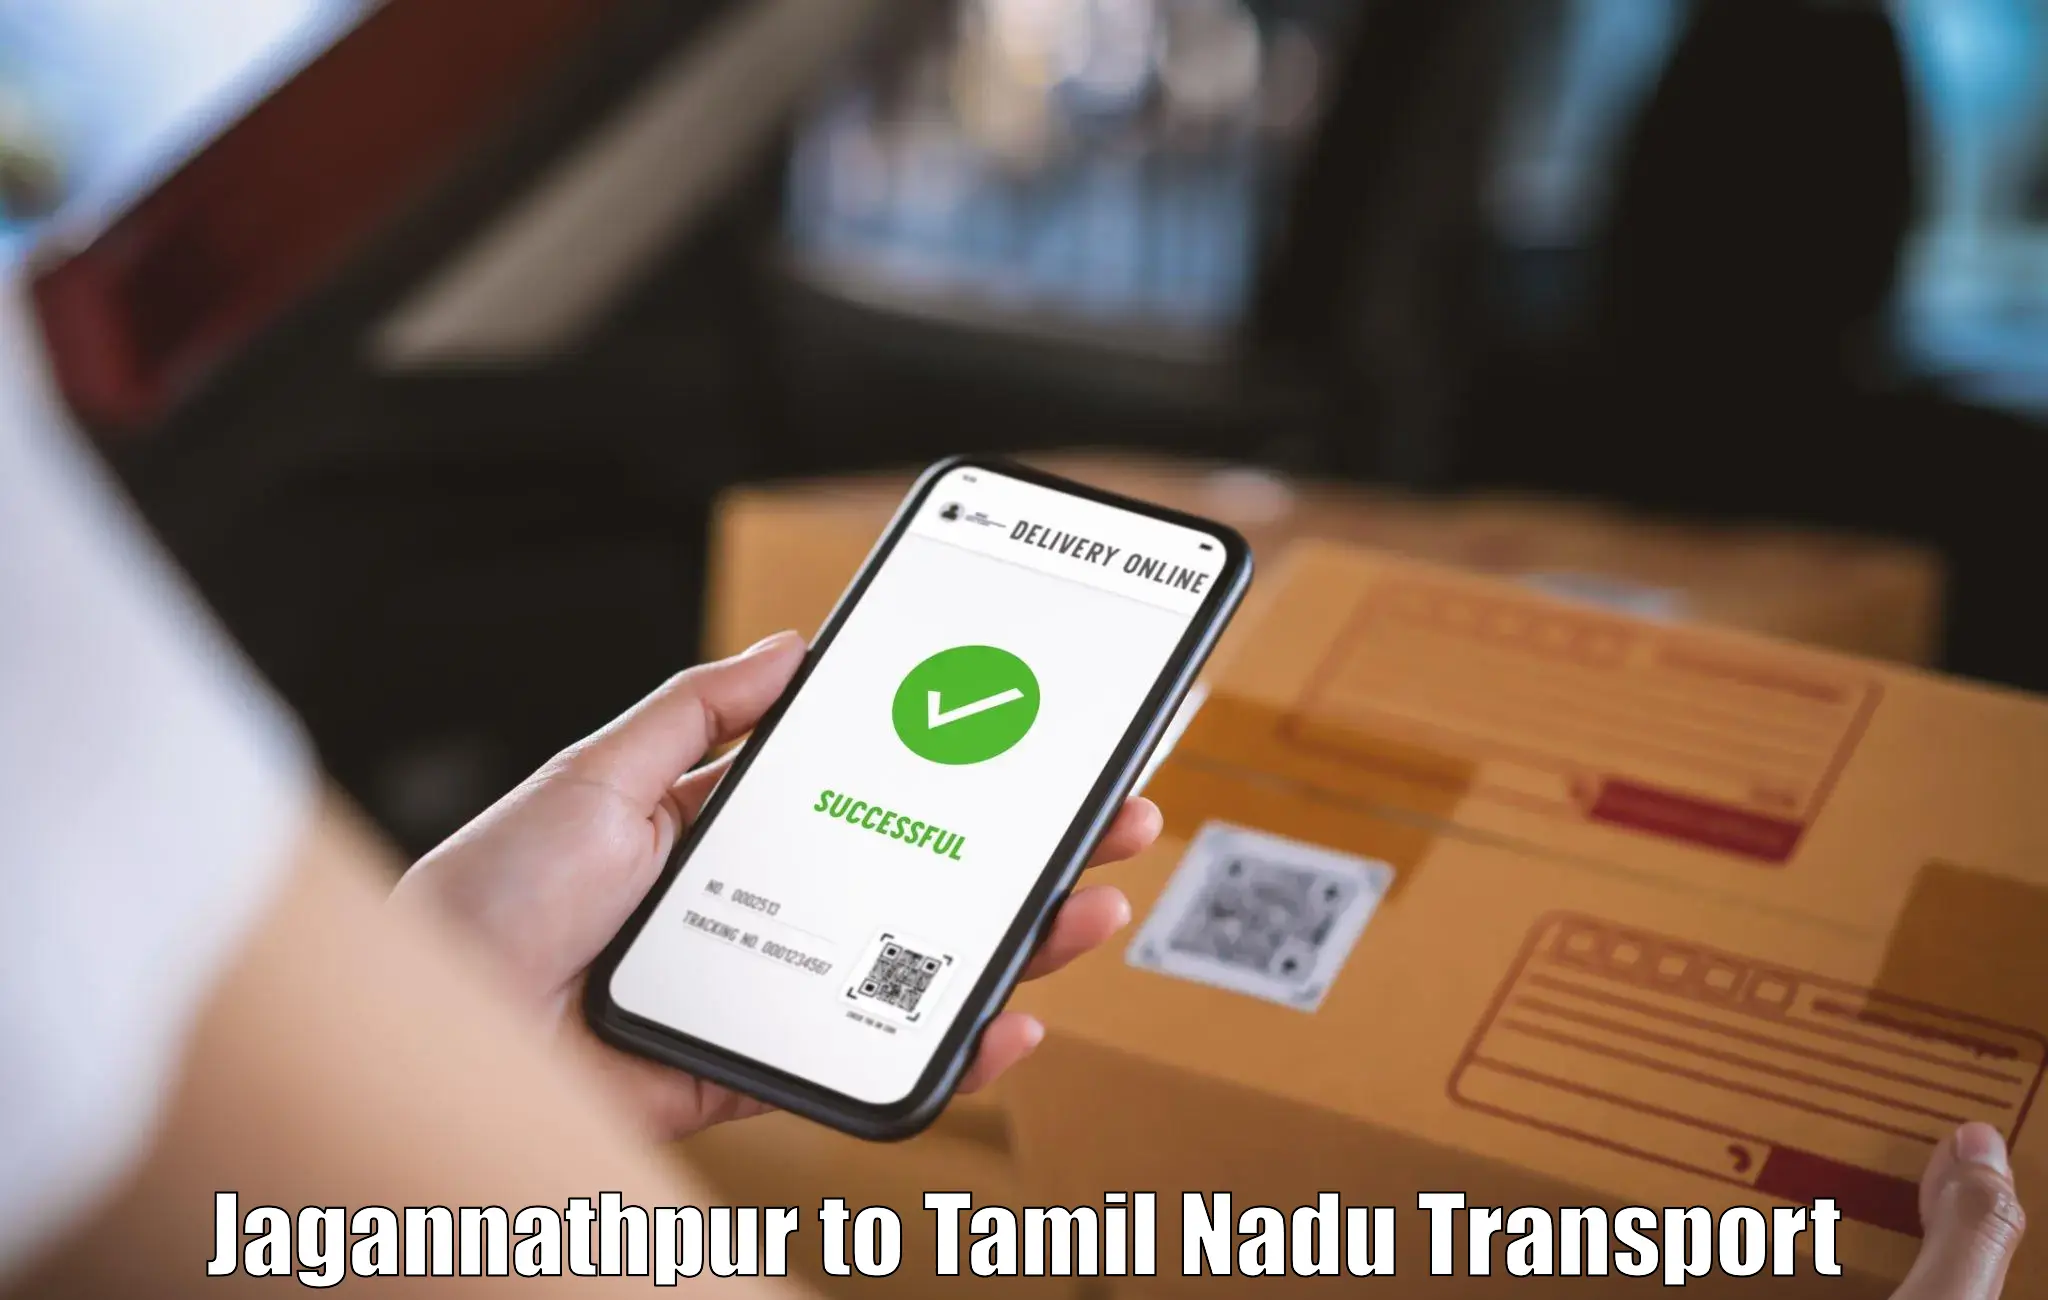 Transport in sharing Jagannathpur to Tamil Nadu